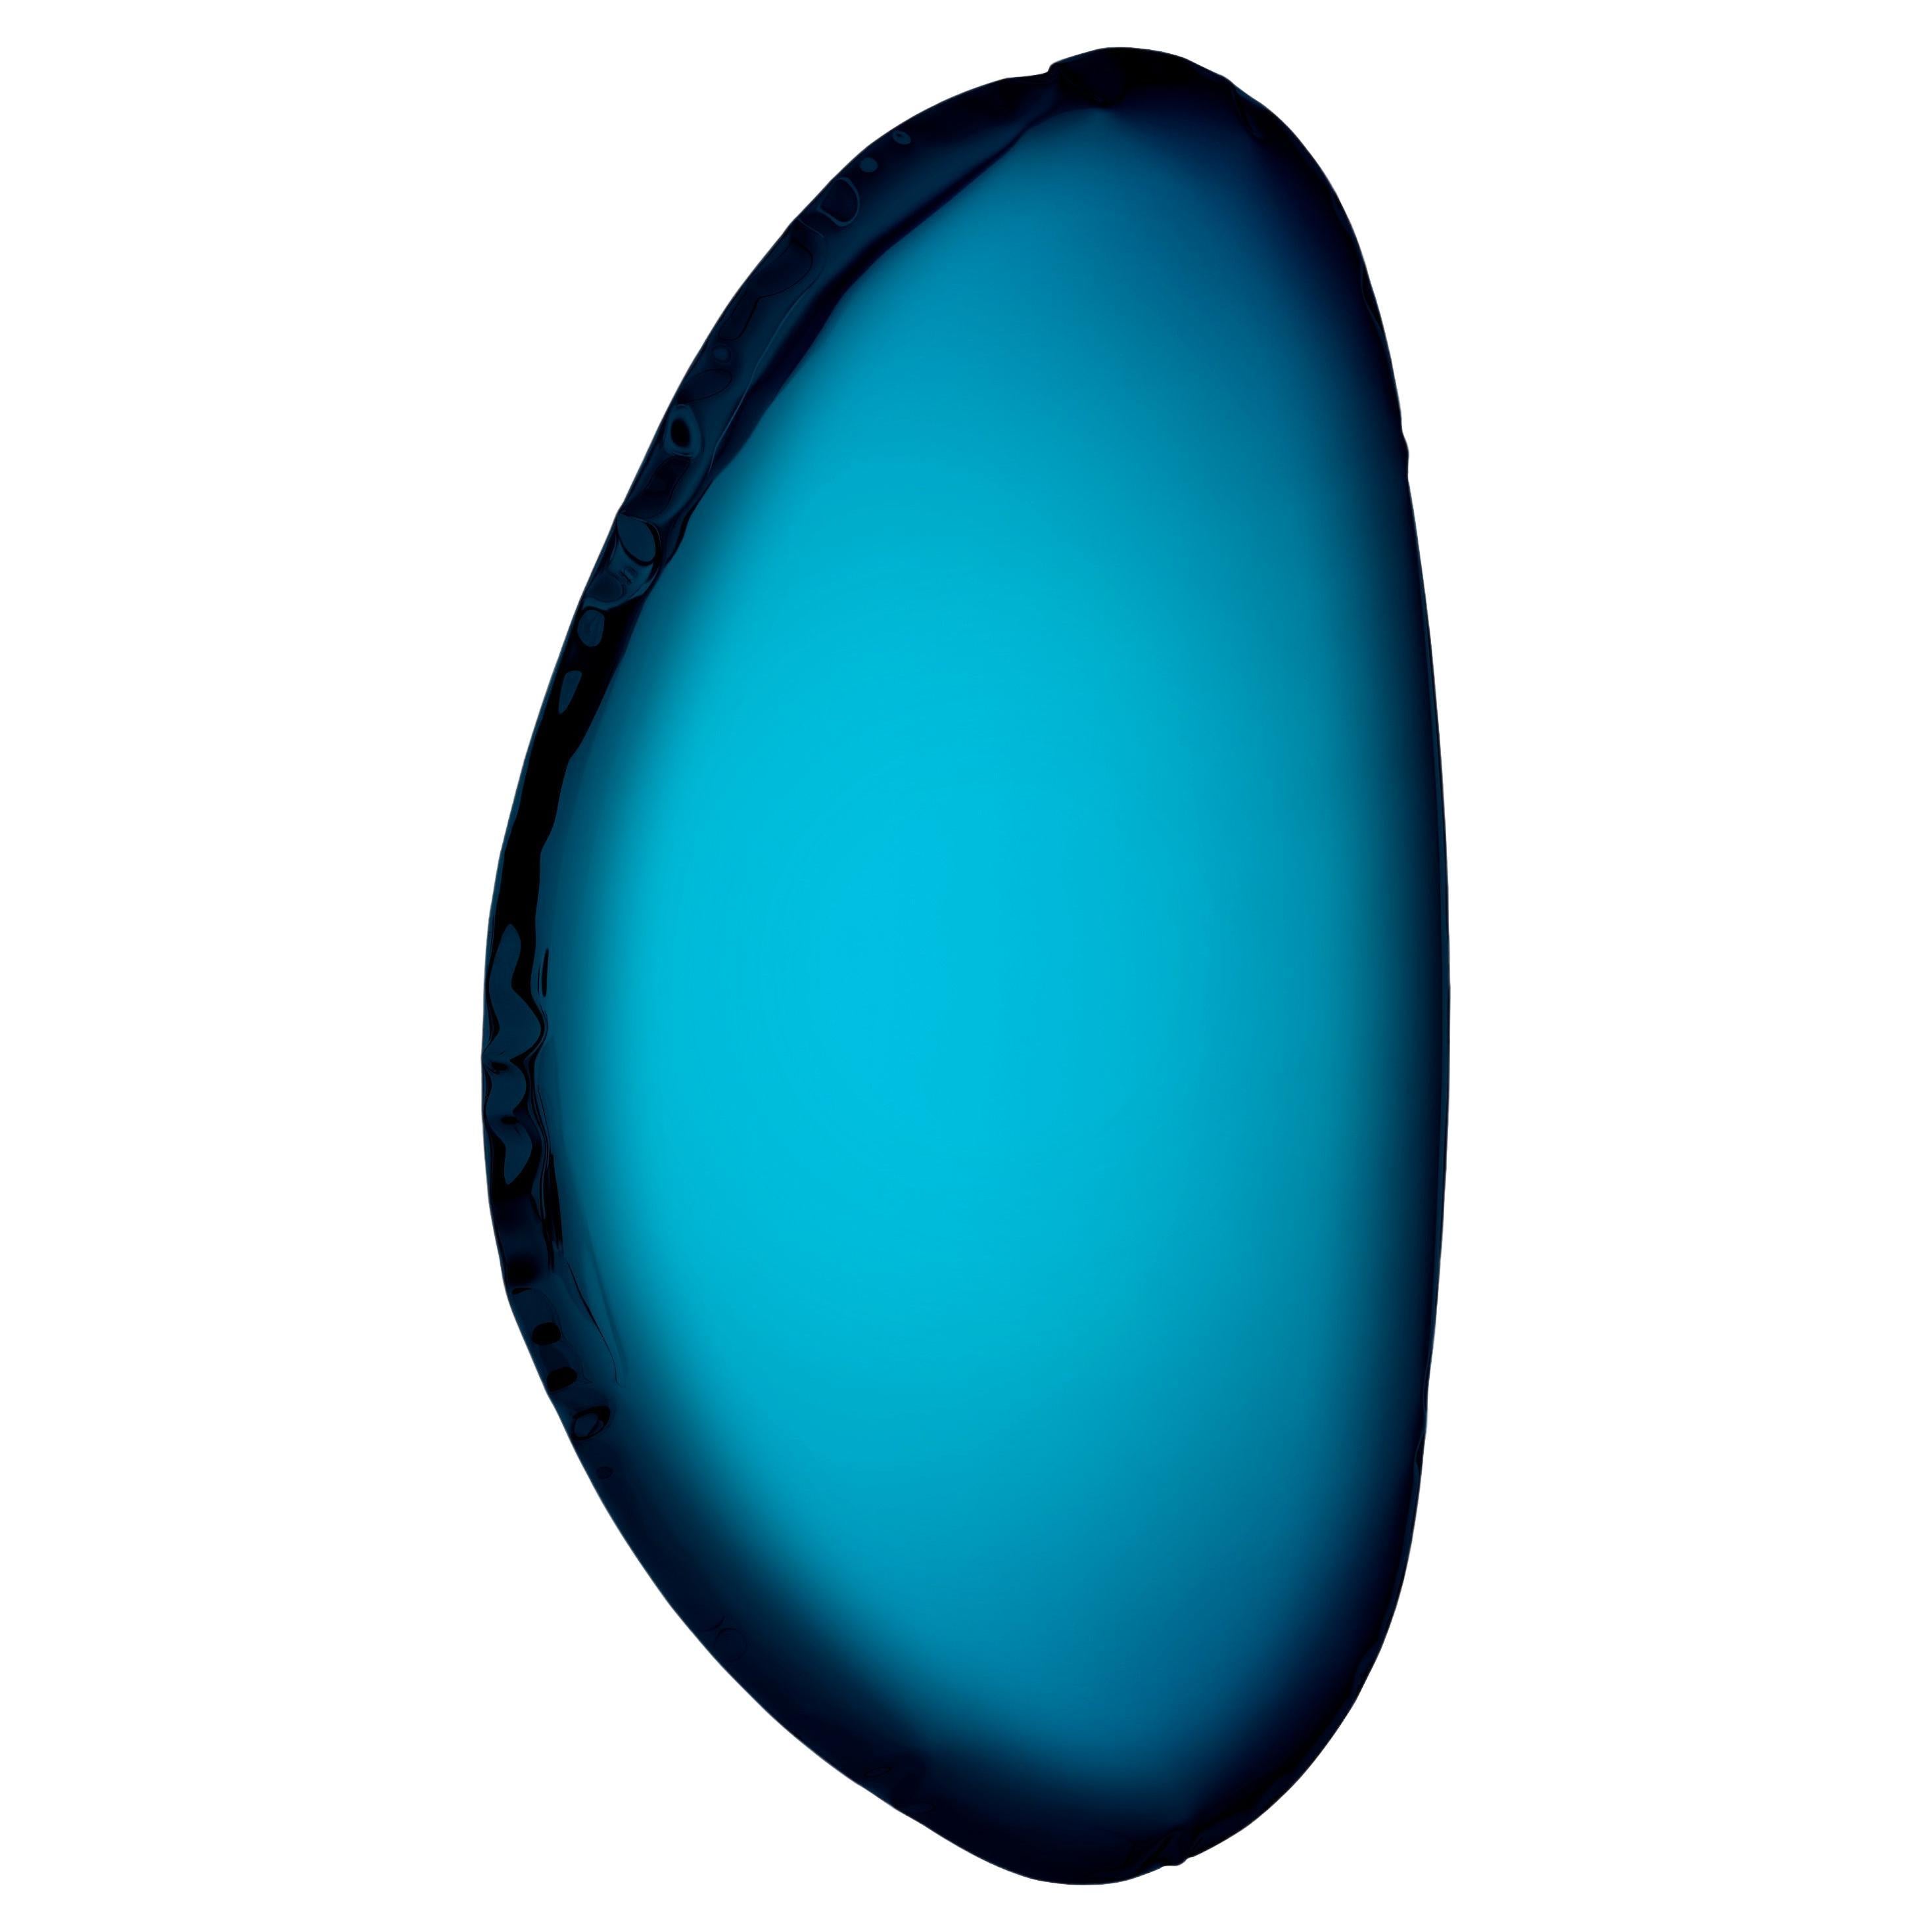 MiroirTafla O3, acier inoxydable de Zieta, bleu profond espace